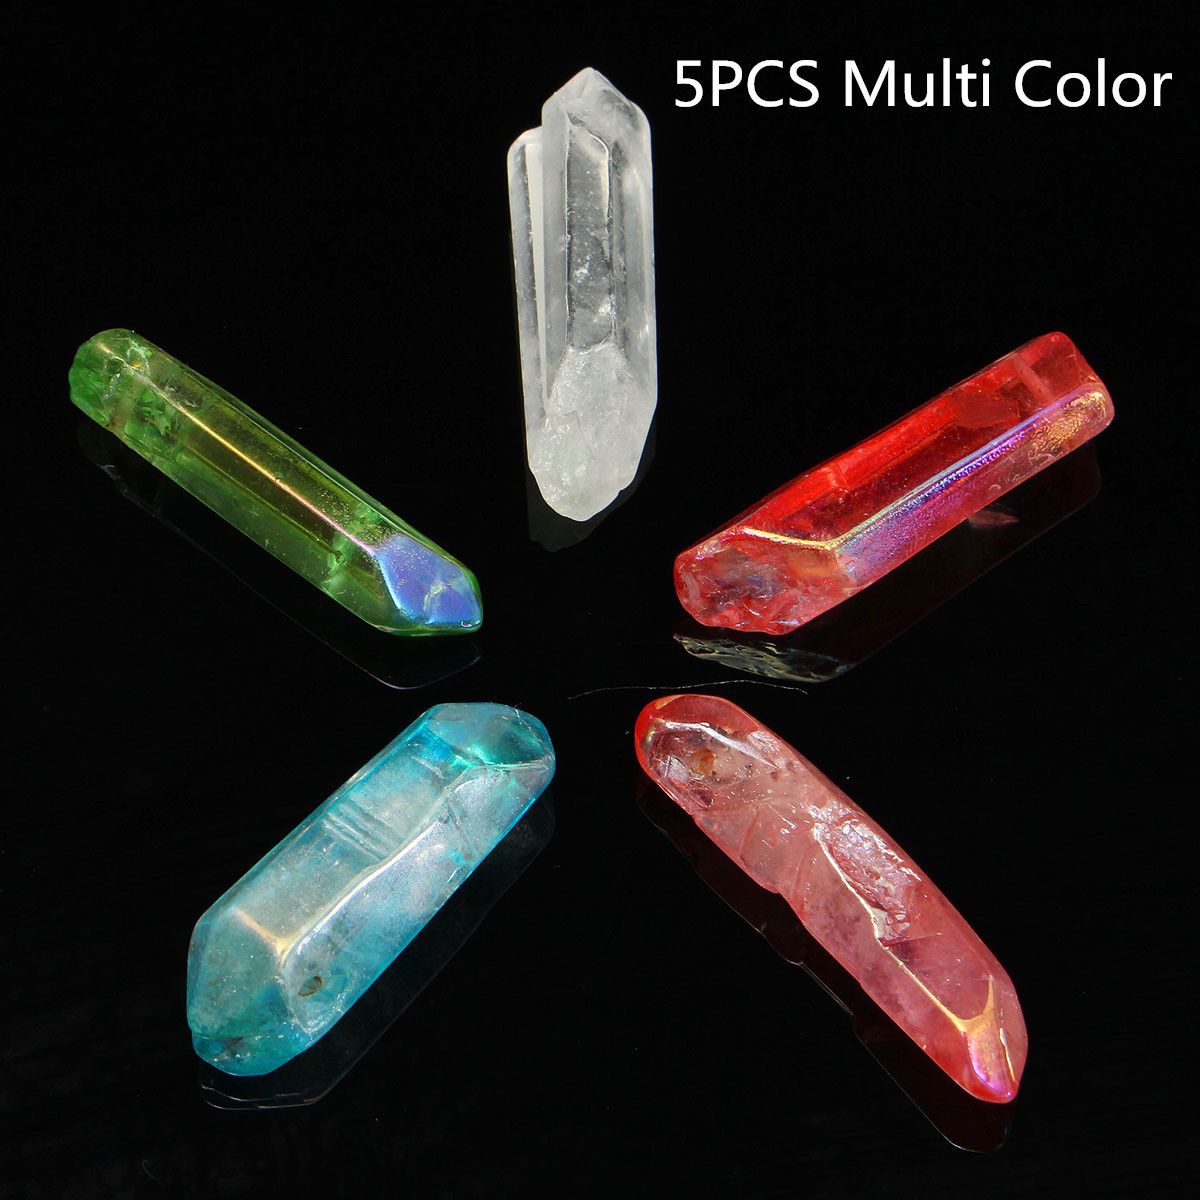 5pcs-35-38mm-Titanium-Rainbow-Natural-Quartz-Crystals-Pendant-Bead-Healing-Point-1571676